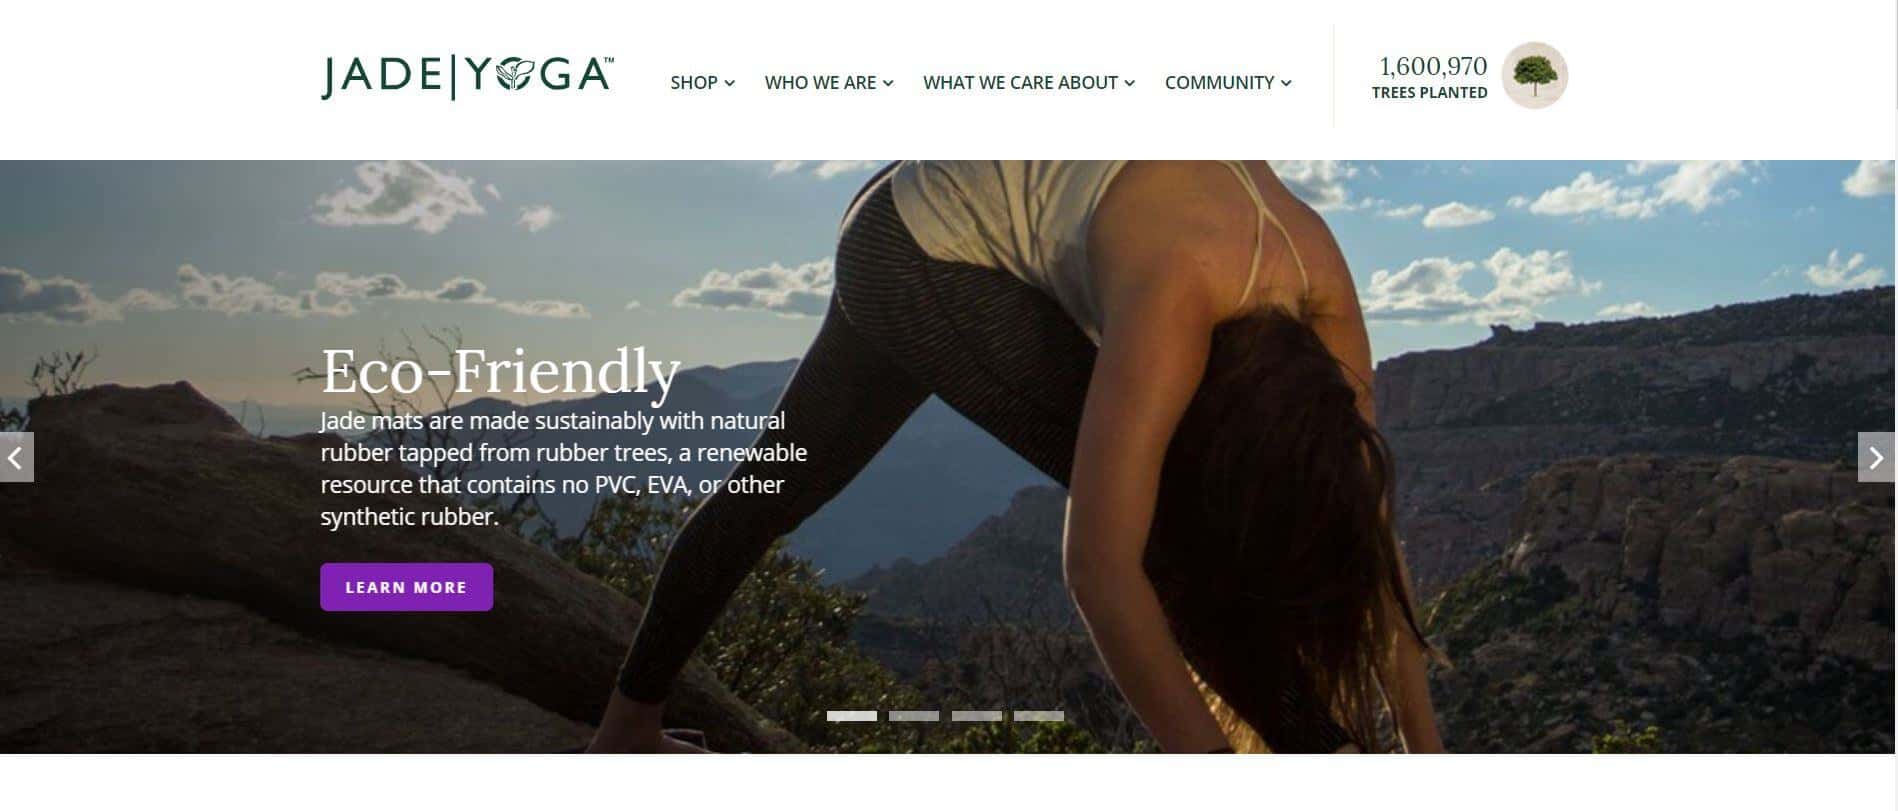 Jade Yoga Screenshot